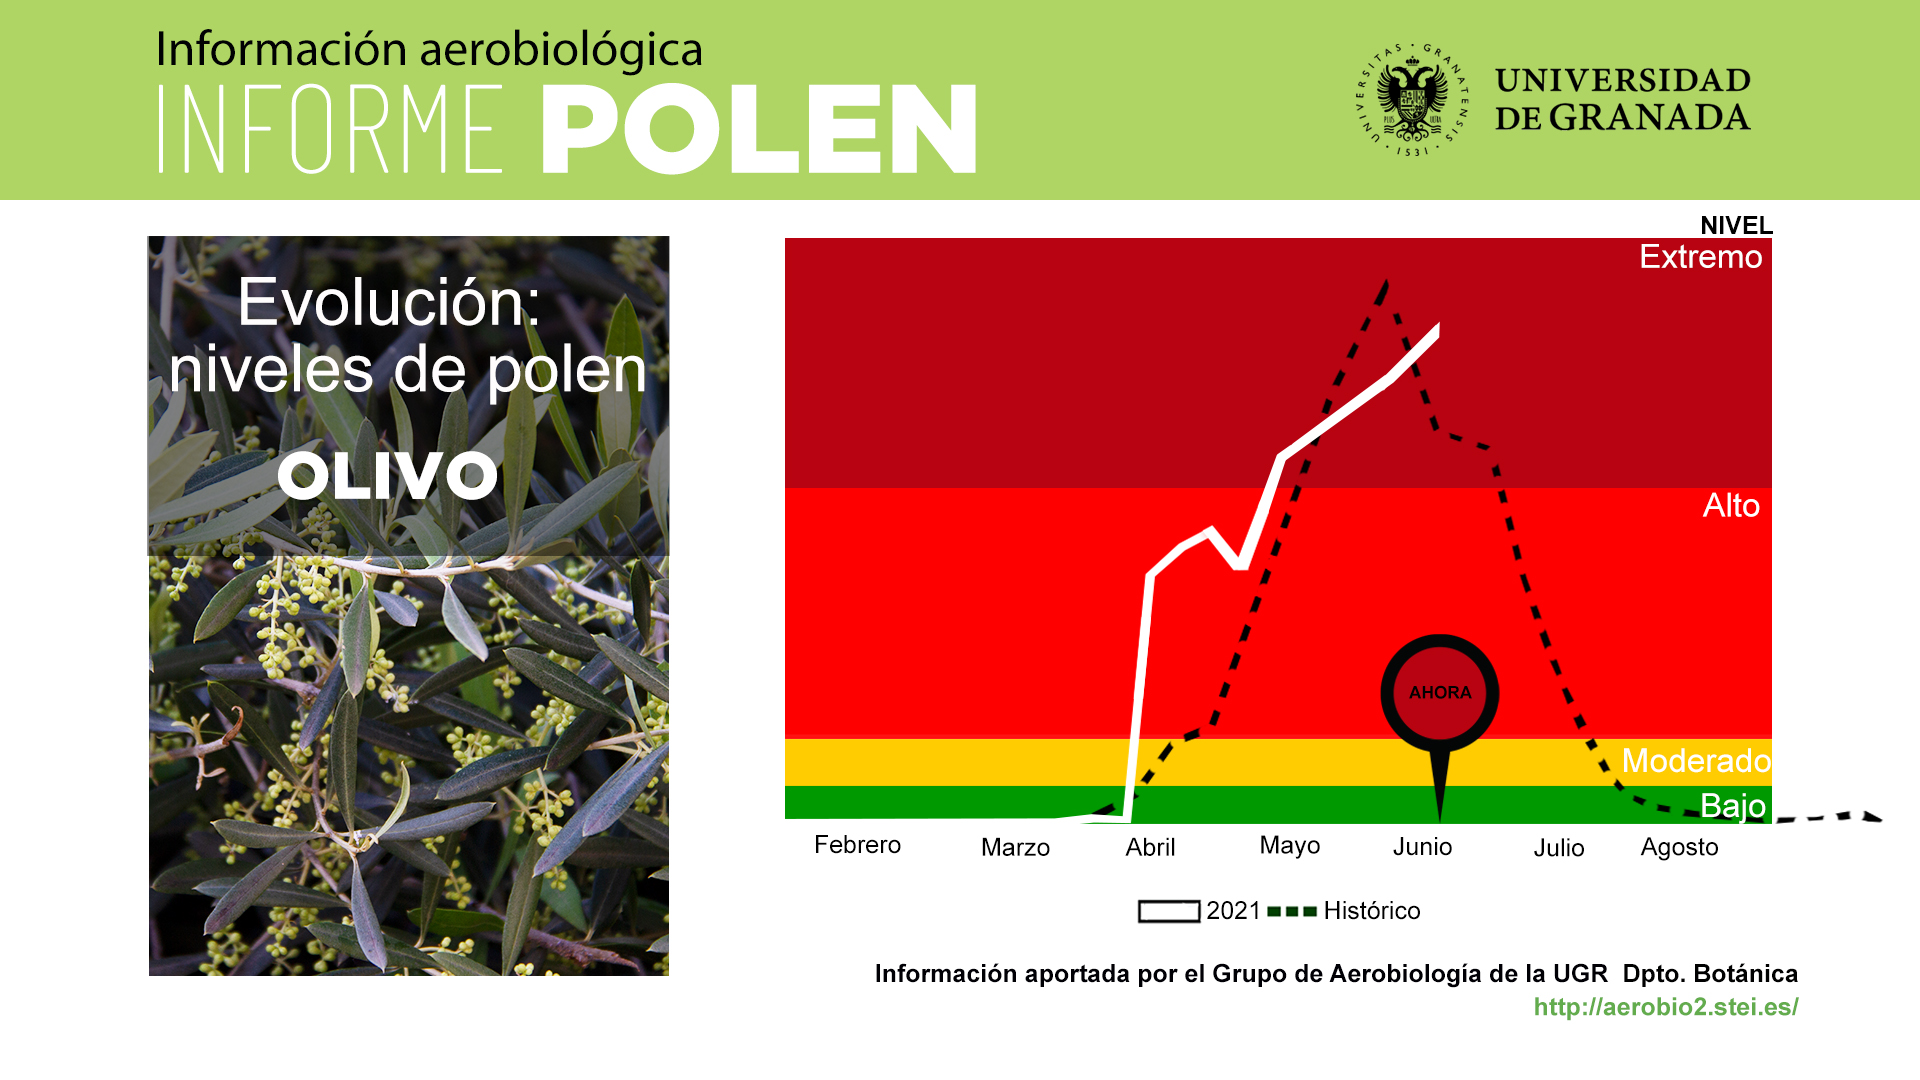 El impacto del polen se mantiene estable en la atmósfera de Granada